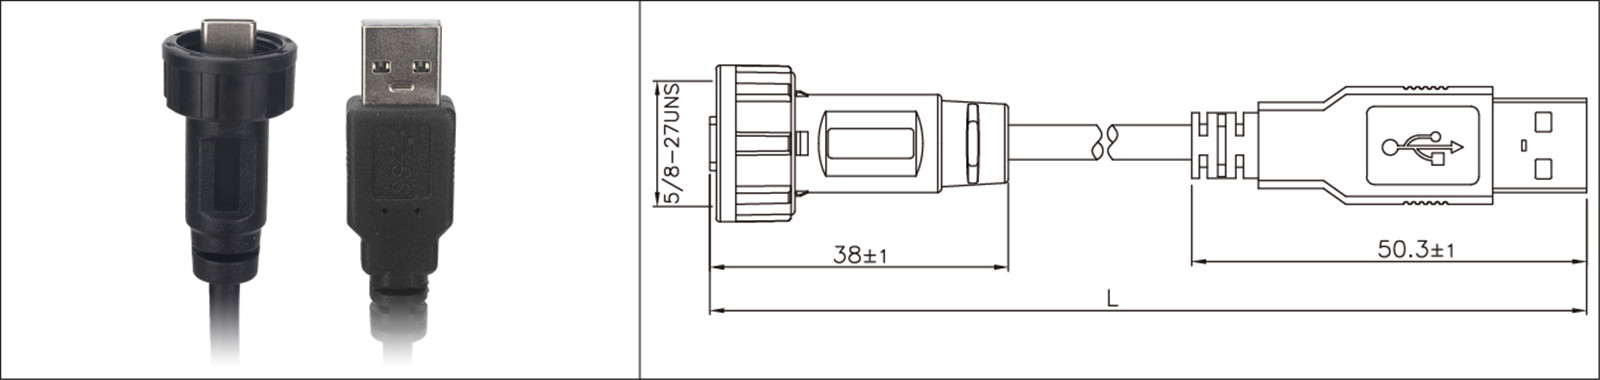 Micro USB montaggio a pannello tipo 2.0 3.0 femmina e maschio impermeabile IP67 cavo di prolunga sovrastampato connettore industriale-02 (6)